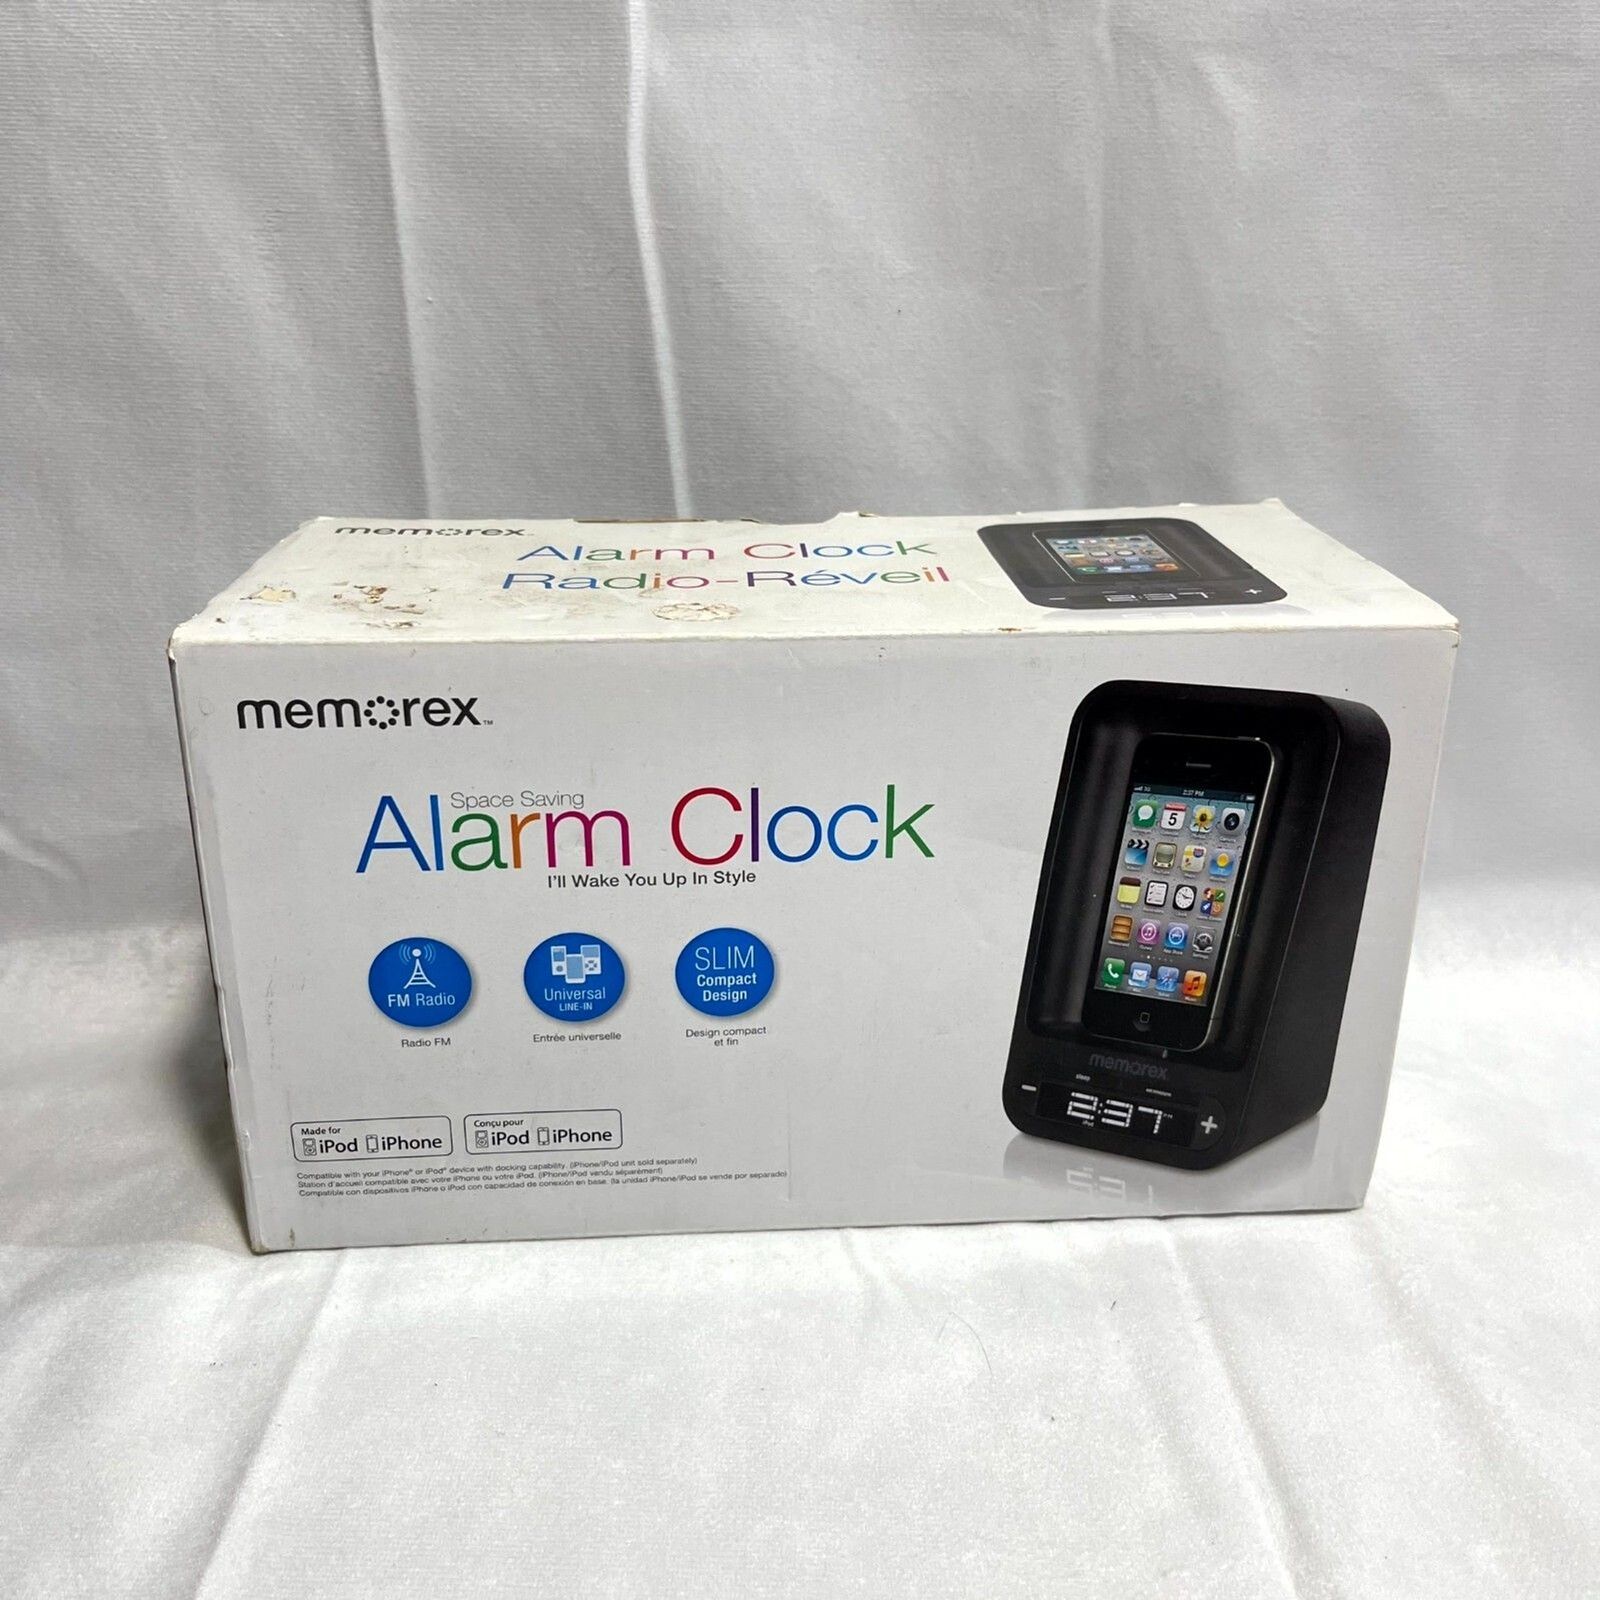 Memorex Old Alarm Clock New in Box